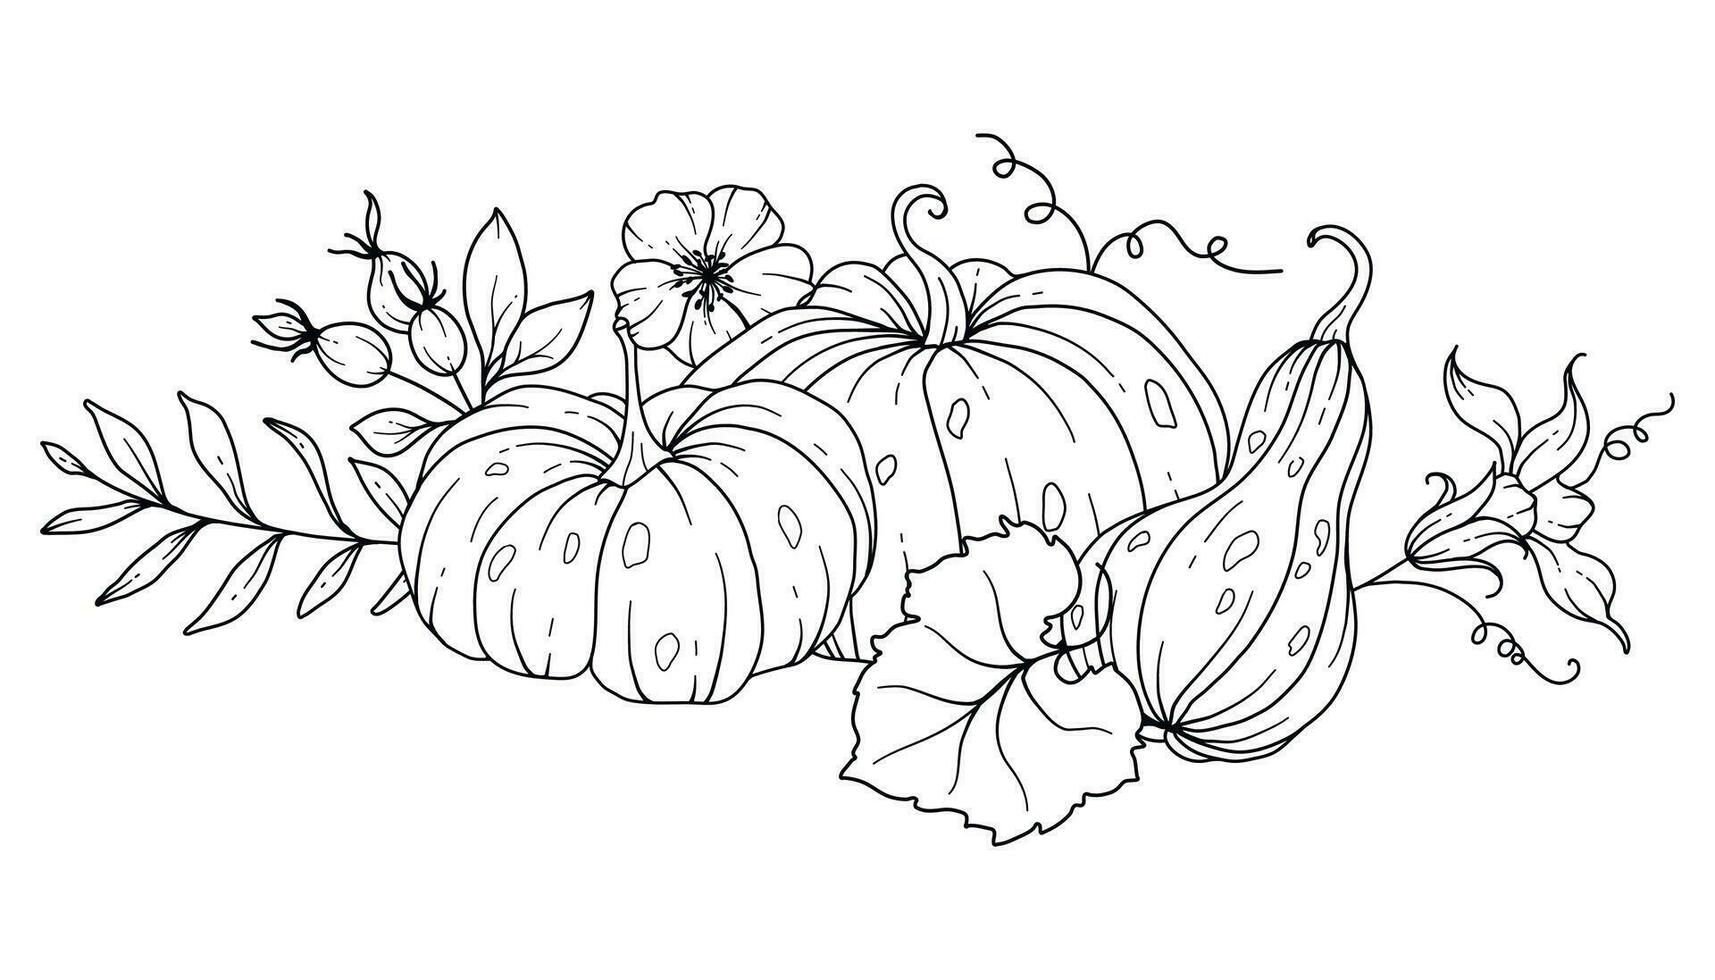 Pumpkins Line Art Illustration, Outline Pumpkin arrangement Hand Drawn Illustration. Coloring Page with Pumpkins.  Thanksgiving Pumpkins set. Thanksgiving Pumpkins set isolated on white vector